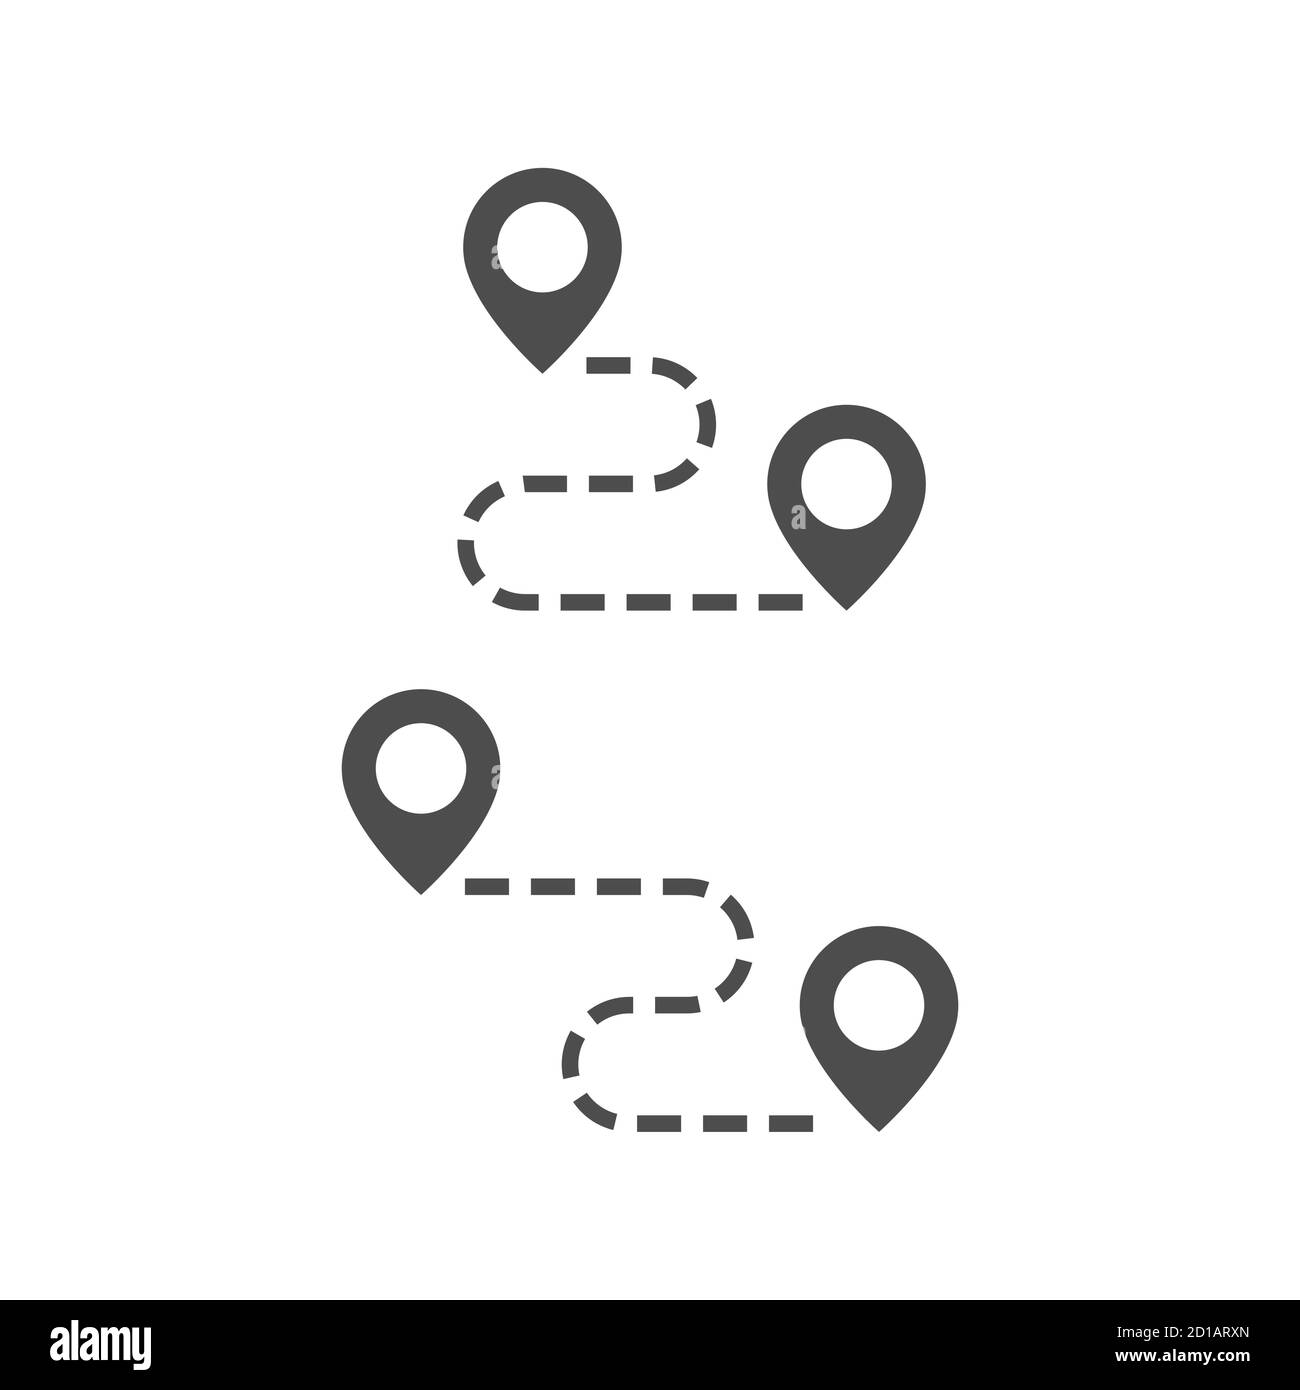 Icona vettoriale nera della mappa stradale. Pin di posizione con simbolo di glifo della linea di rotta tratteggiata. Illustrazione Vettoriale